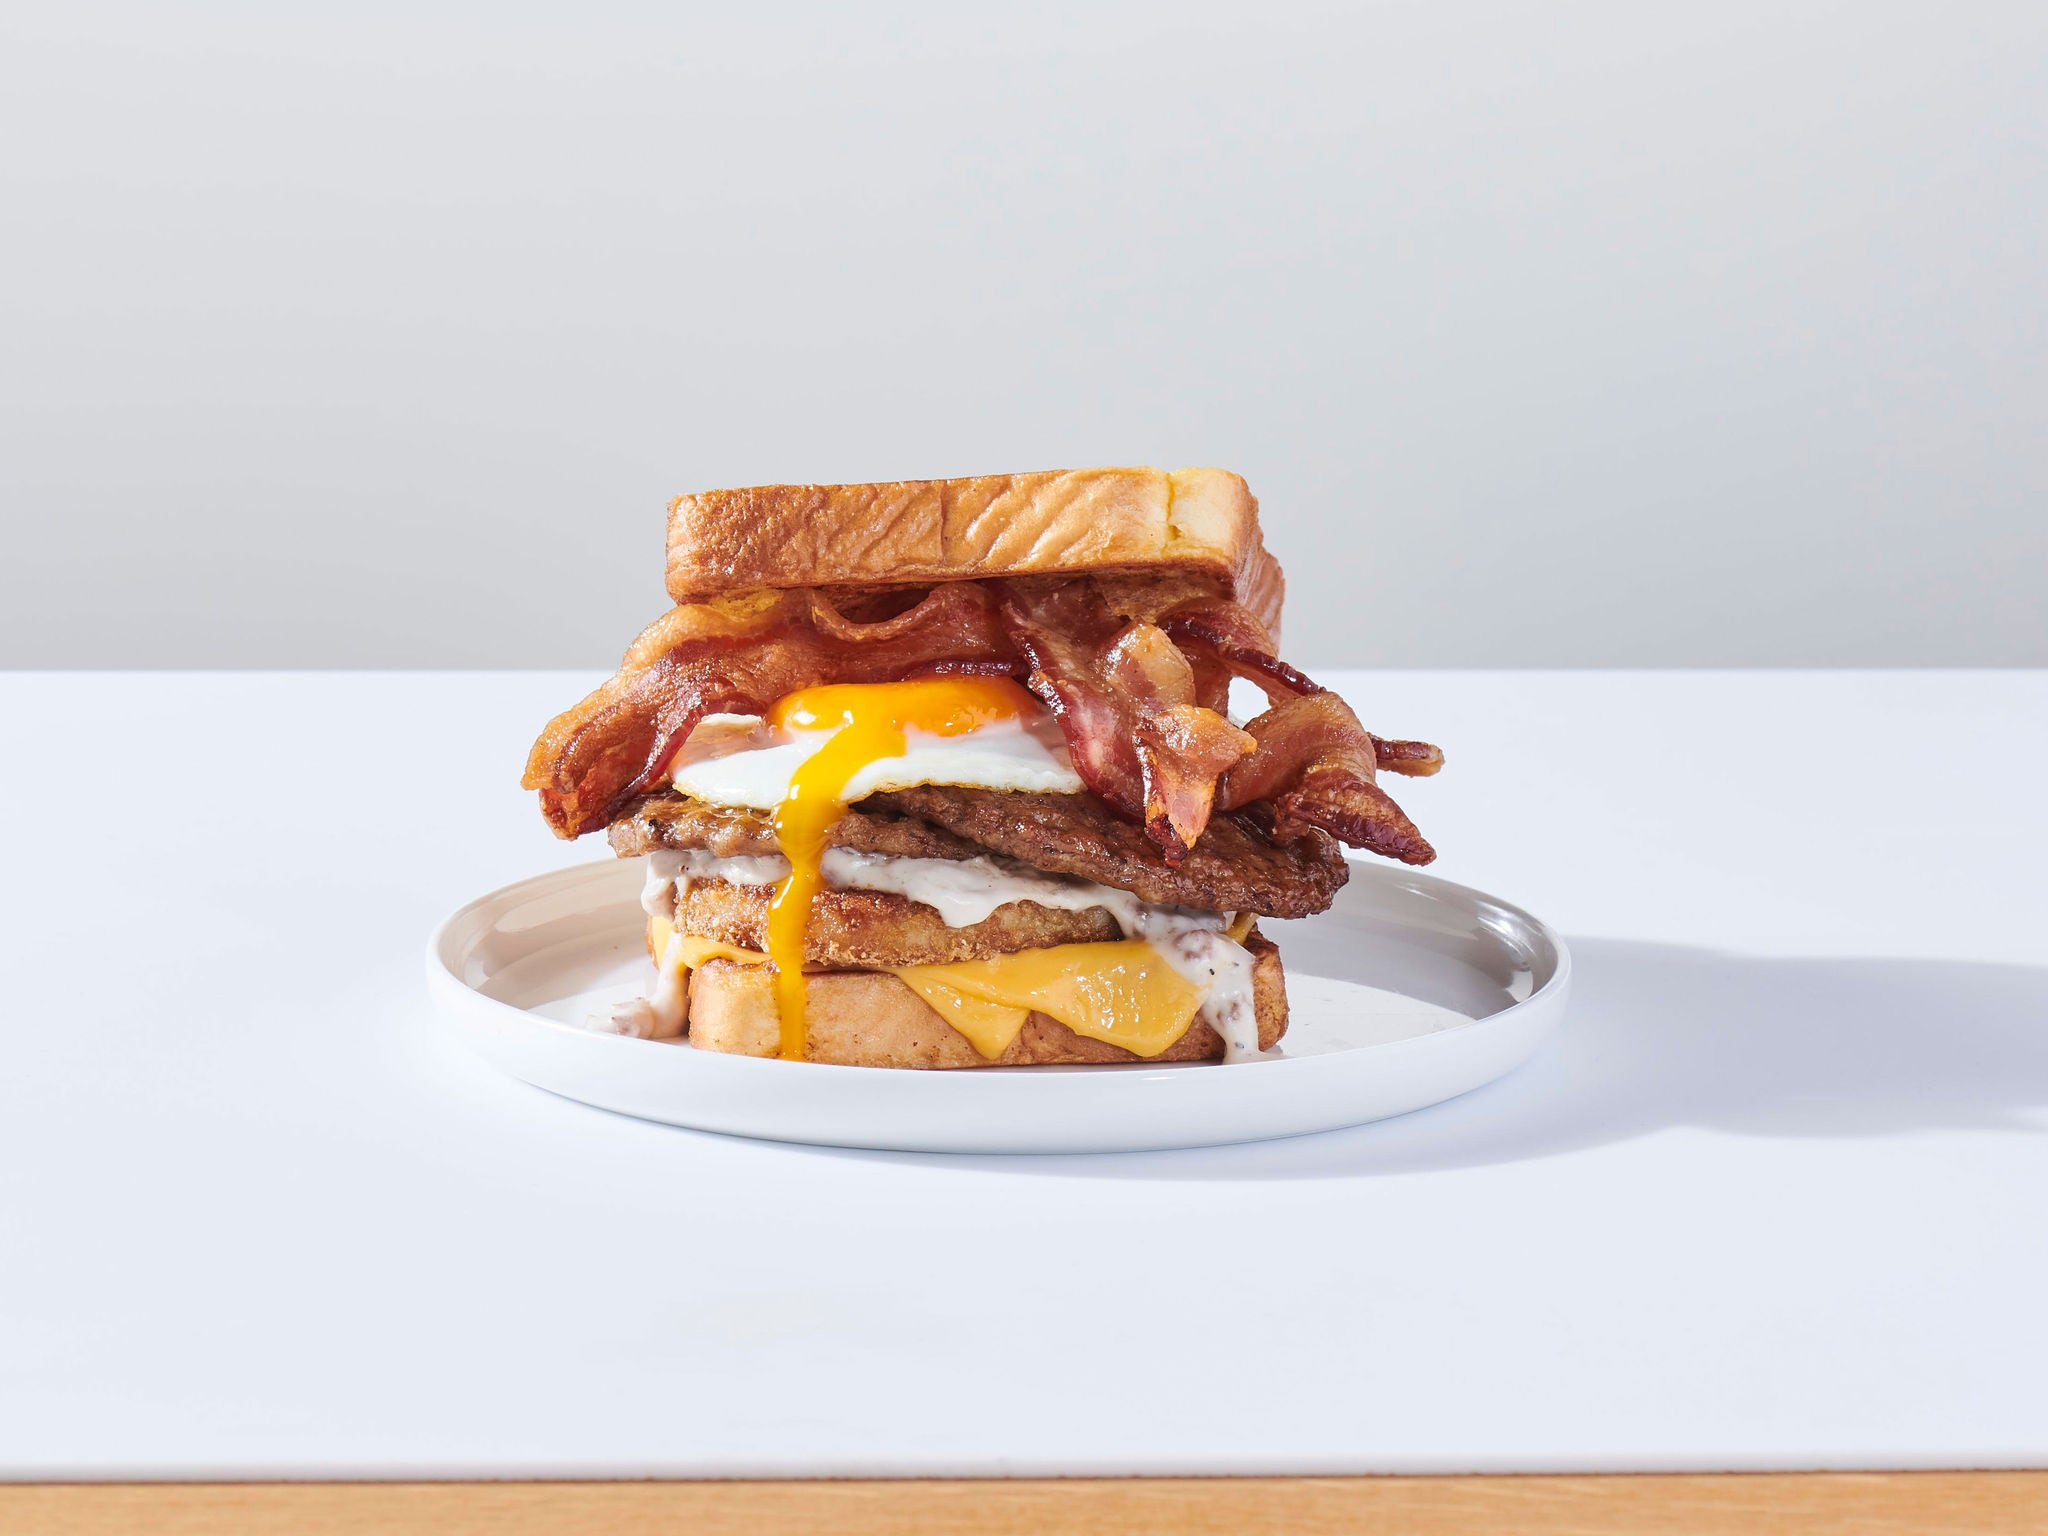 Image of Lumberjack Stack Breakfast Sandwich on a platter.